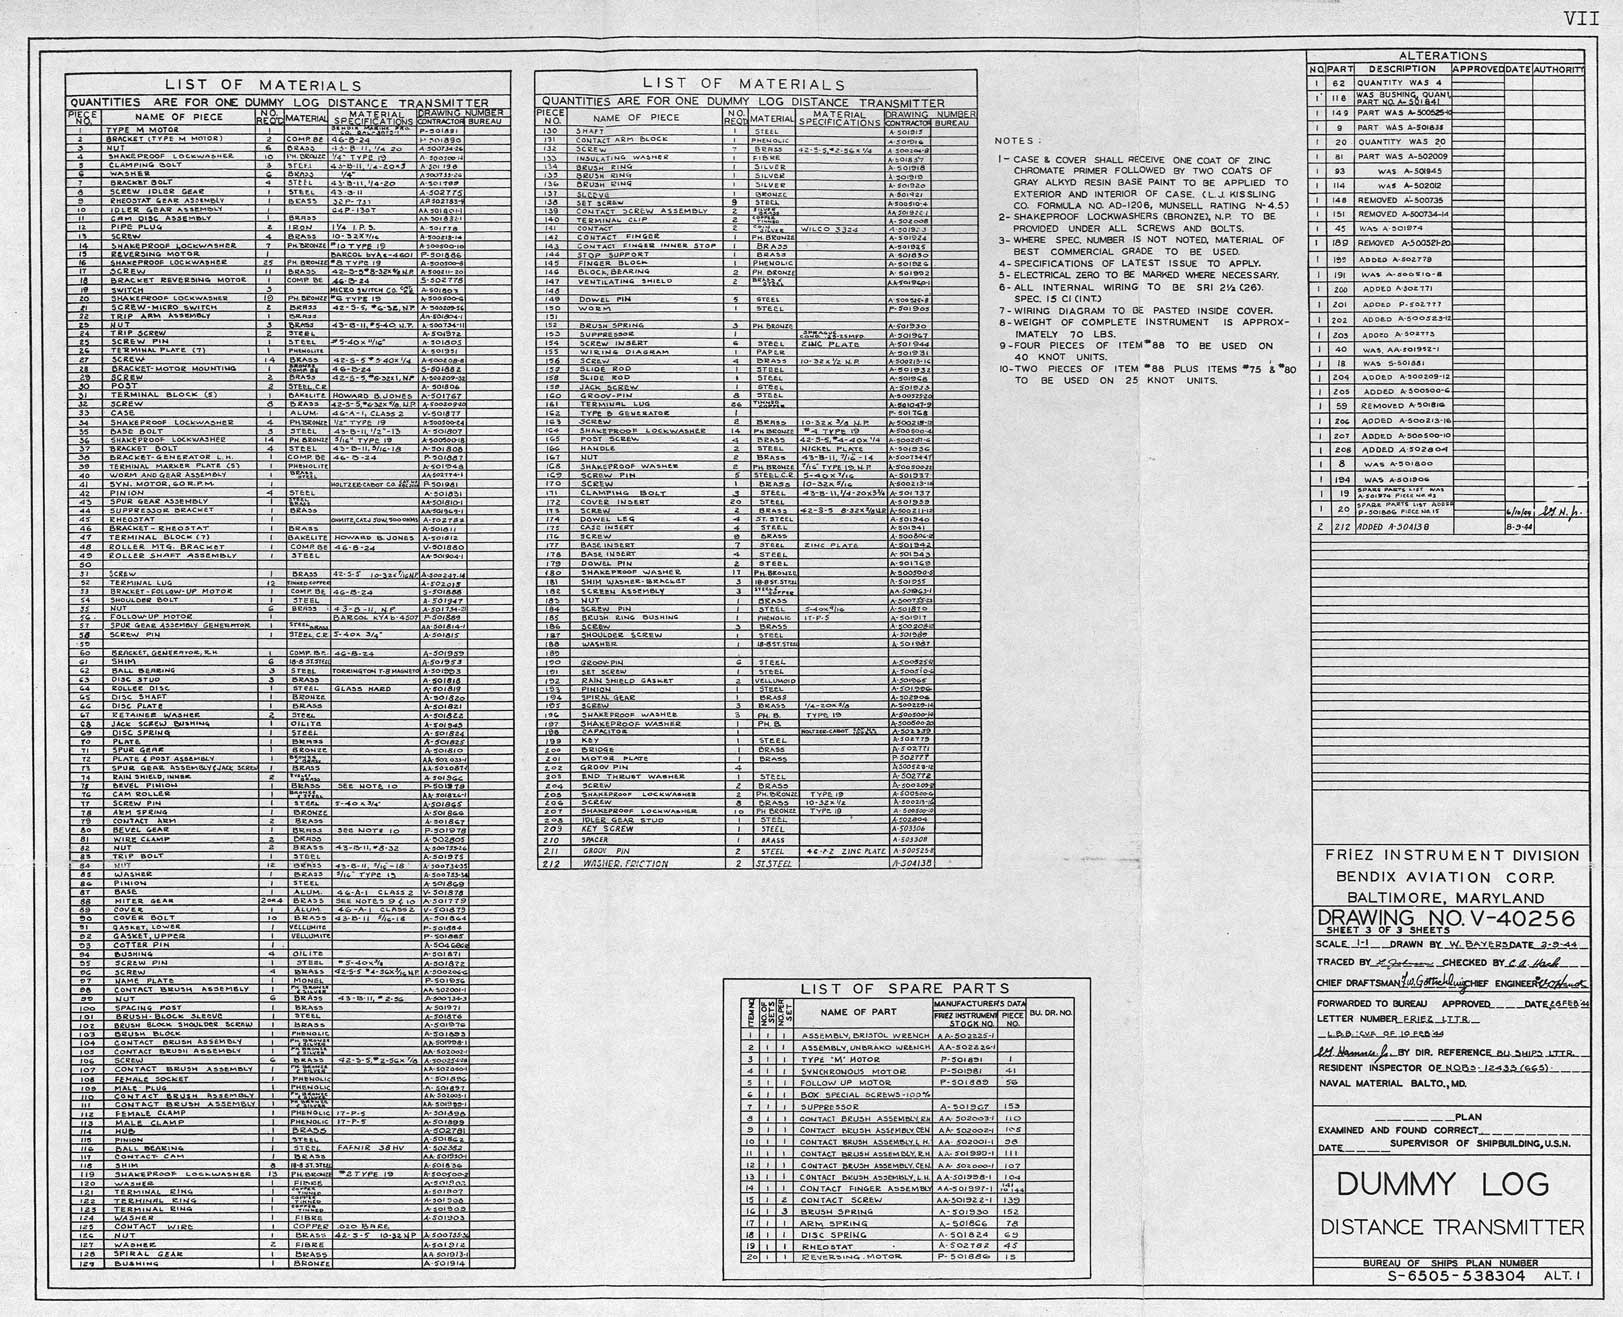 V-40256-Dummy Log Distance Transmitter-Sheet 3 - Parts List